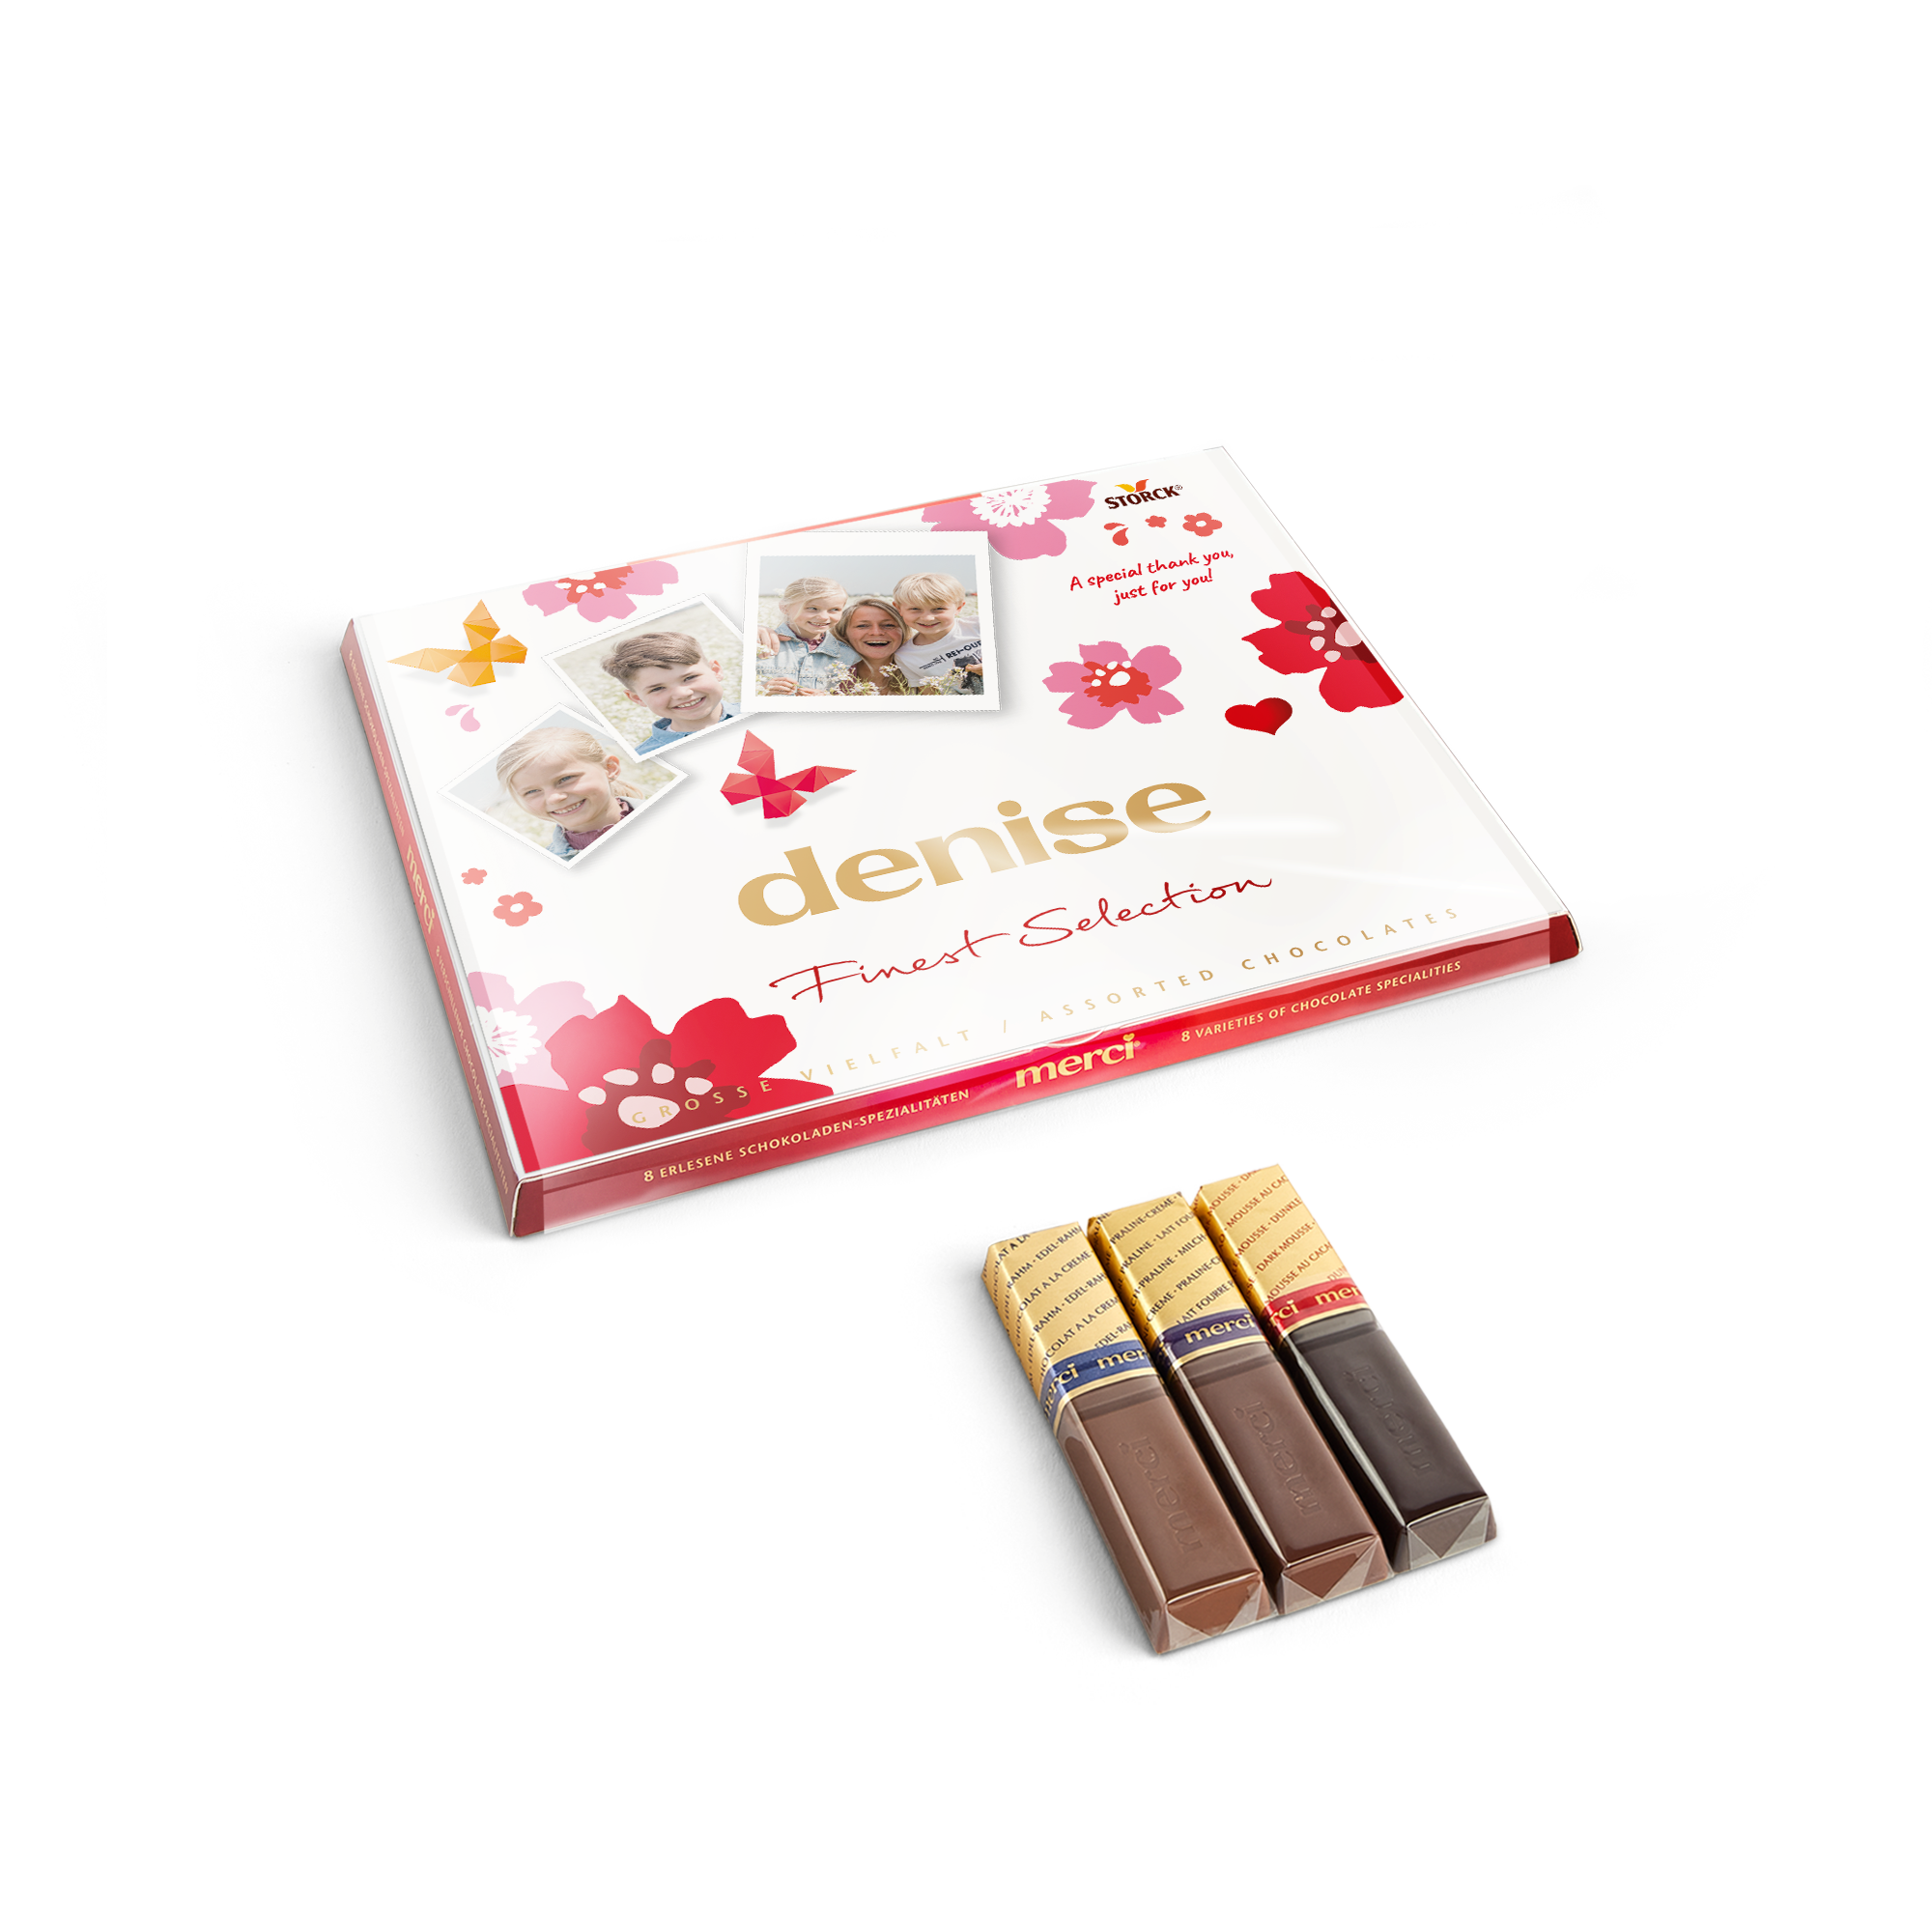 Personlig presentförpackning med Merci-choklad och gratulationskort